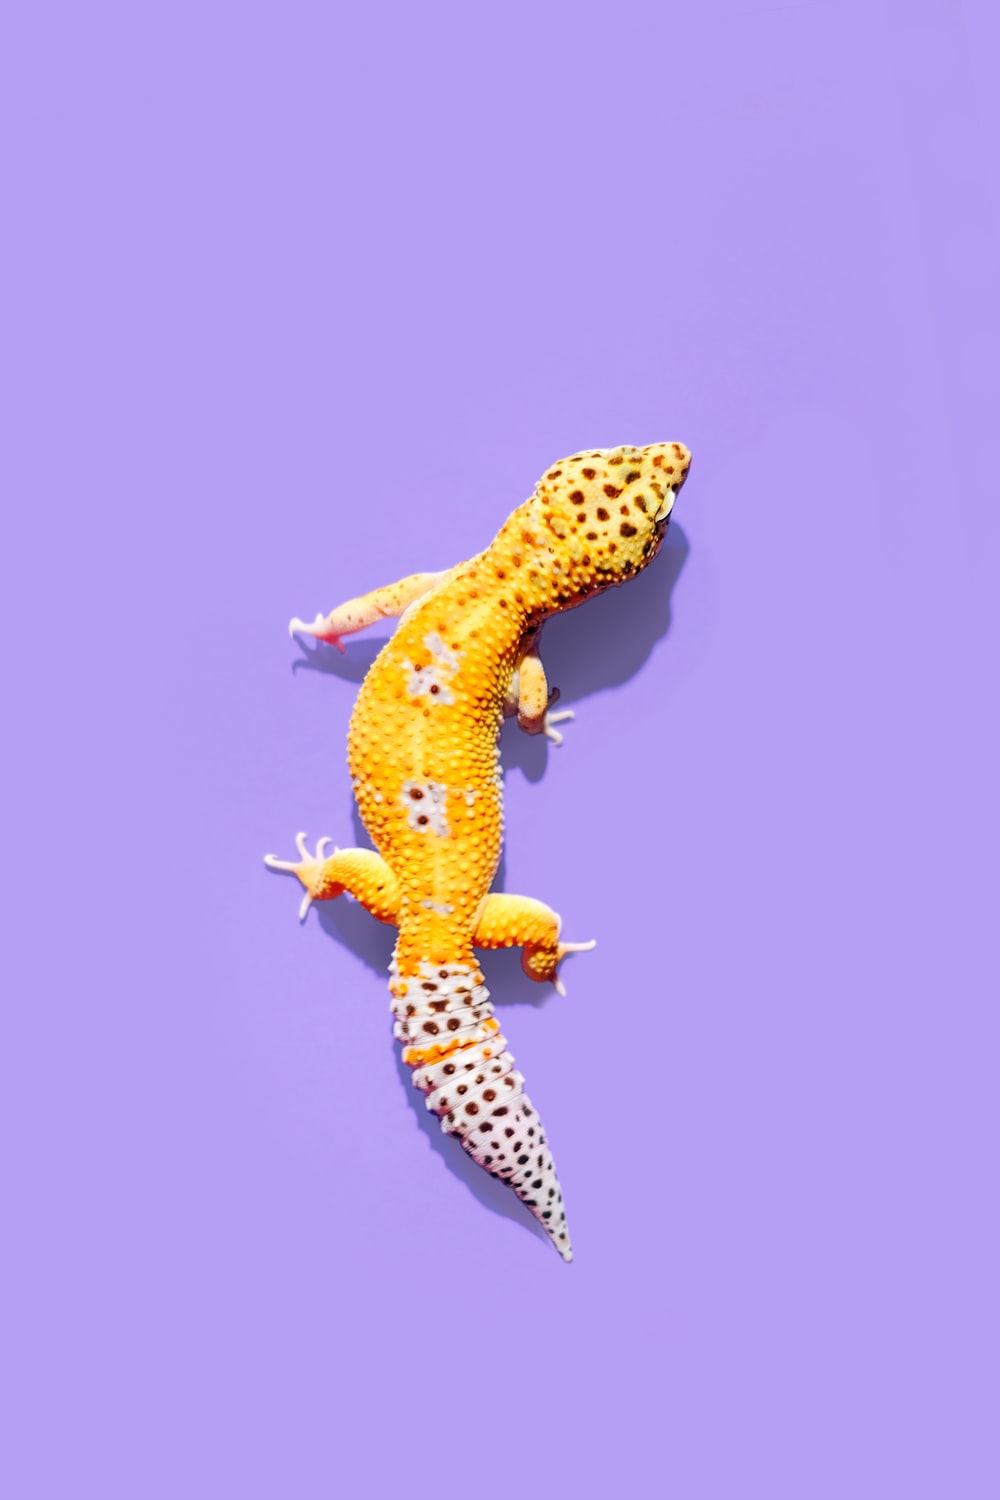 Gecko Wallpapers